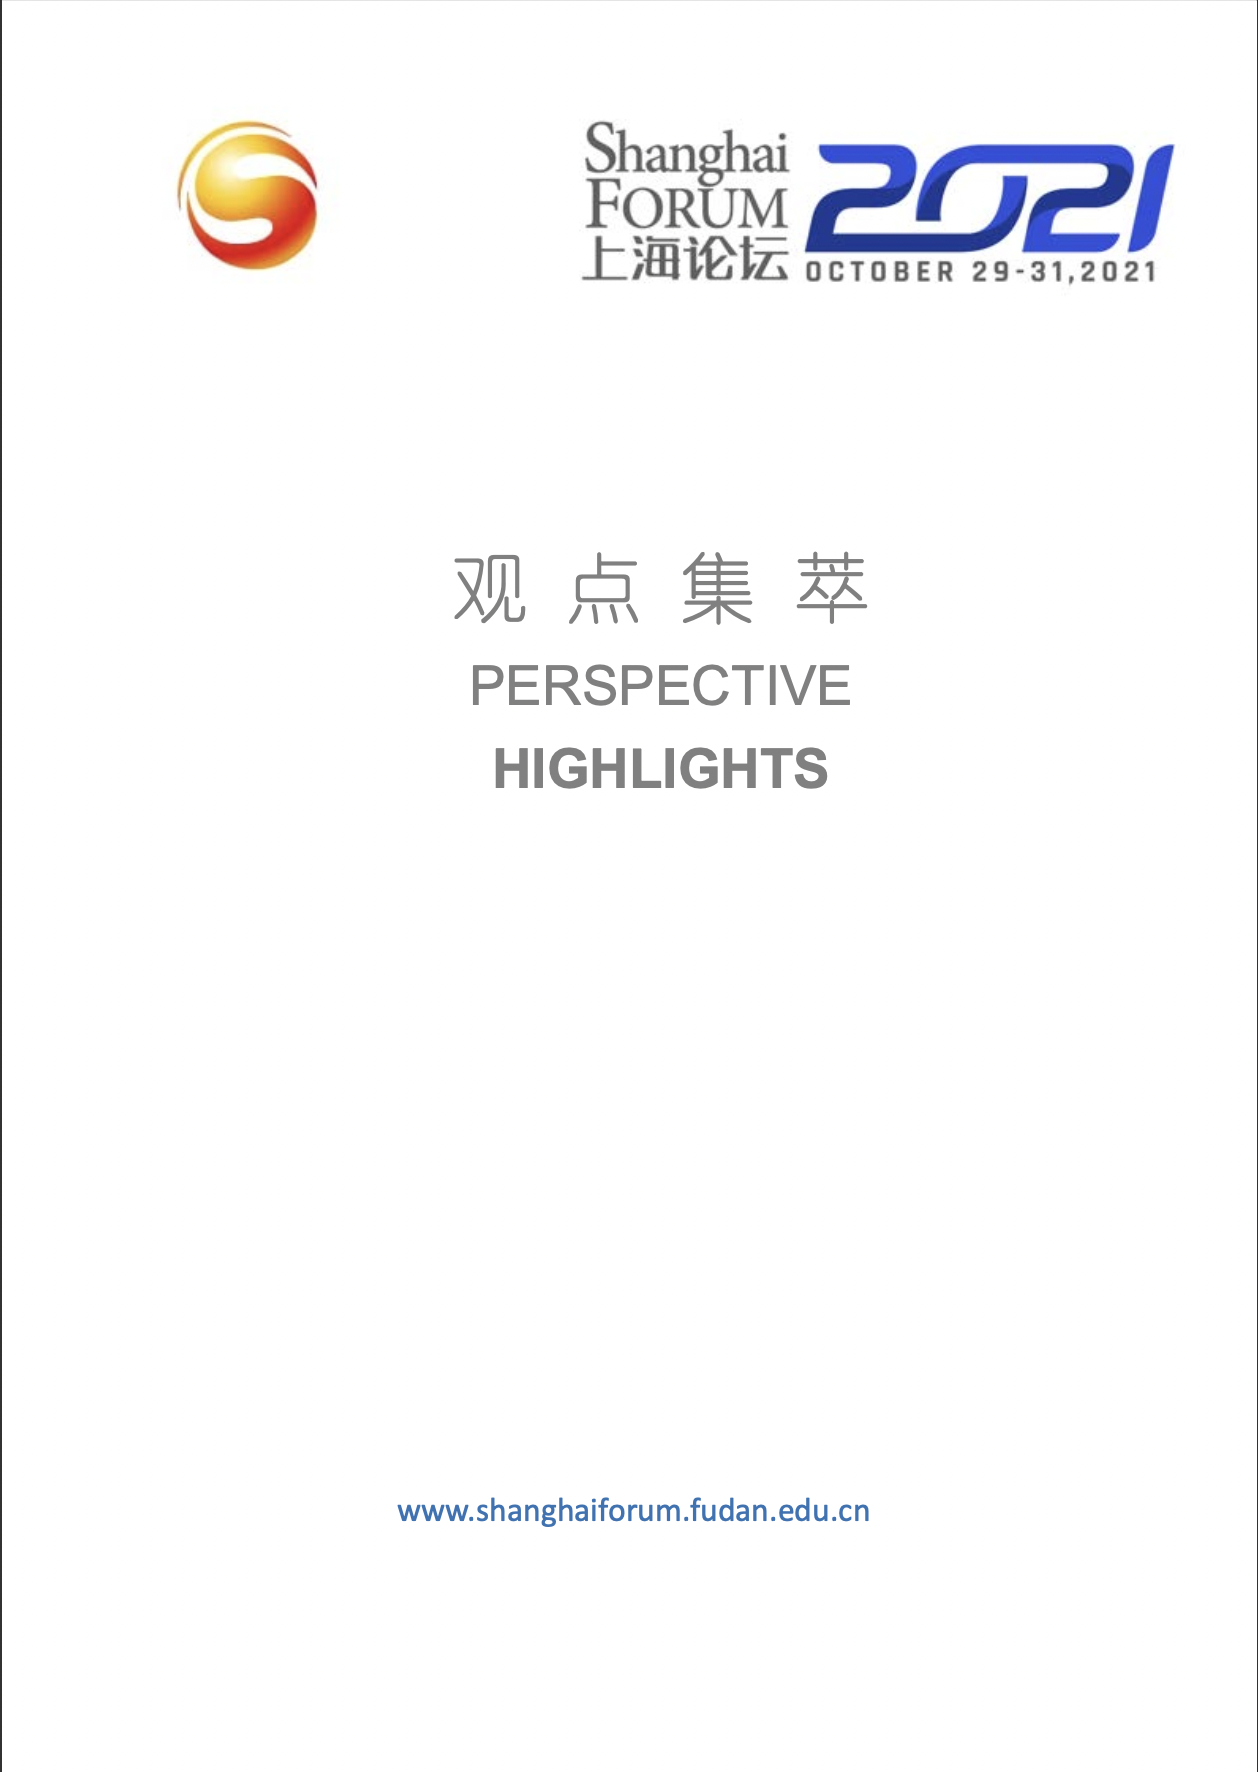 上海论坛2021圆桌观点集萃